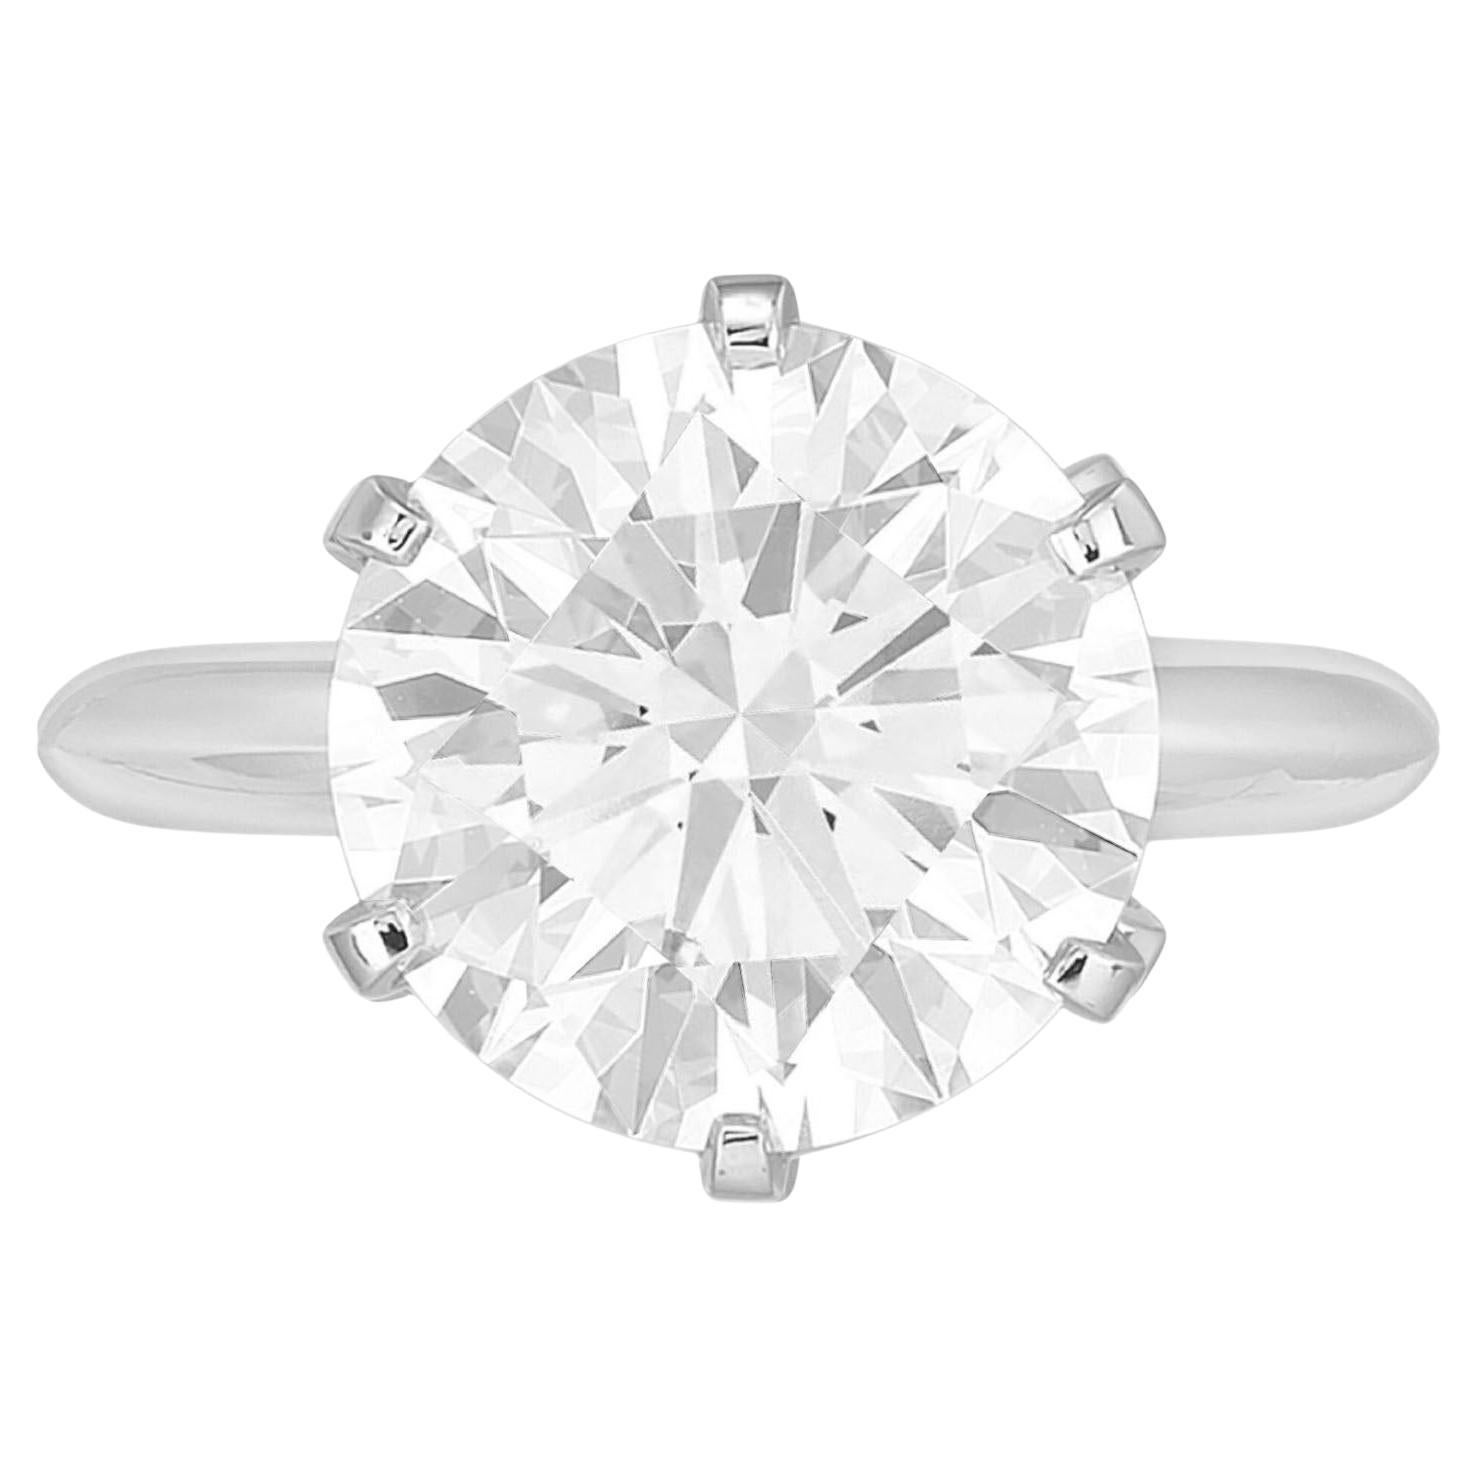 Parez-vous de l'élégance intemporelle de cette bague solitaire en diamant rond de 5,02 carats certifiée par le GIA, un symbole époustouflant de beauté et de sophistication éternelles. La pièce maîtresse de cette bague exquise est un captivant